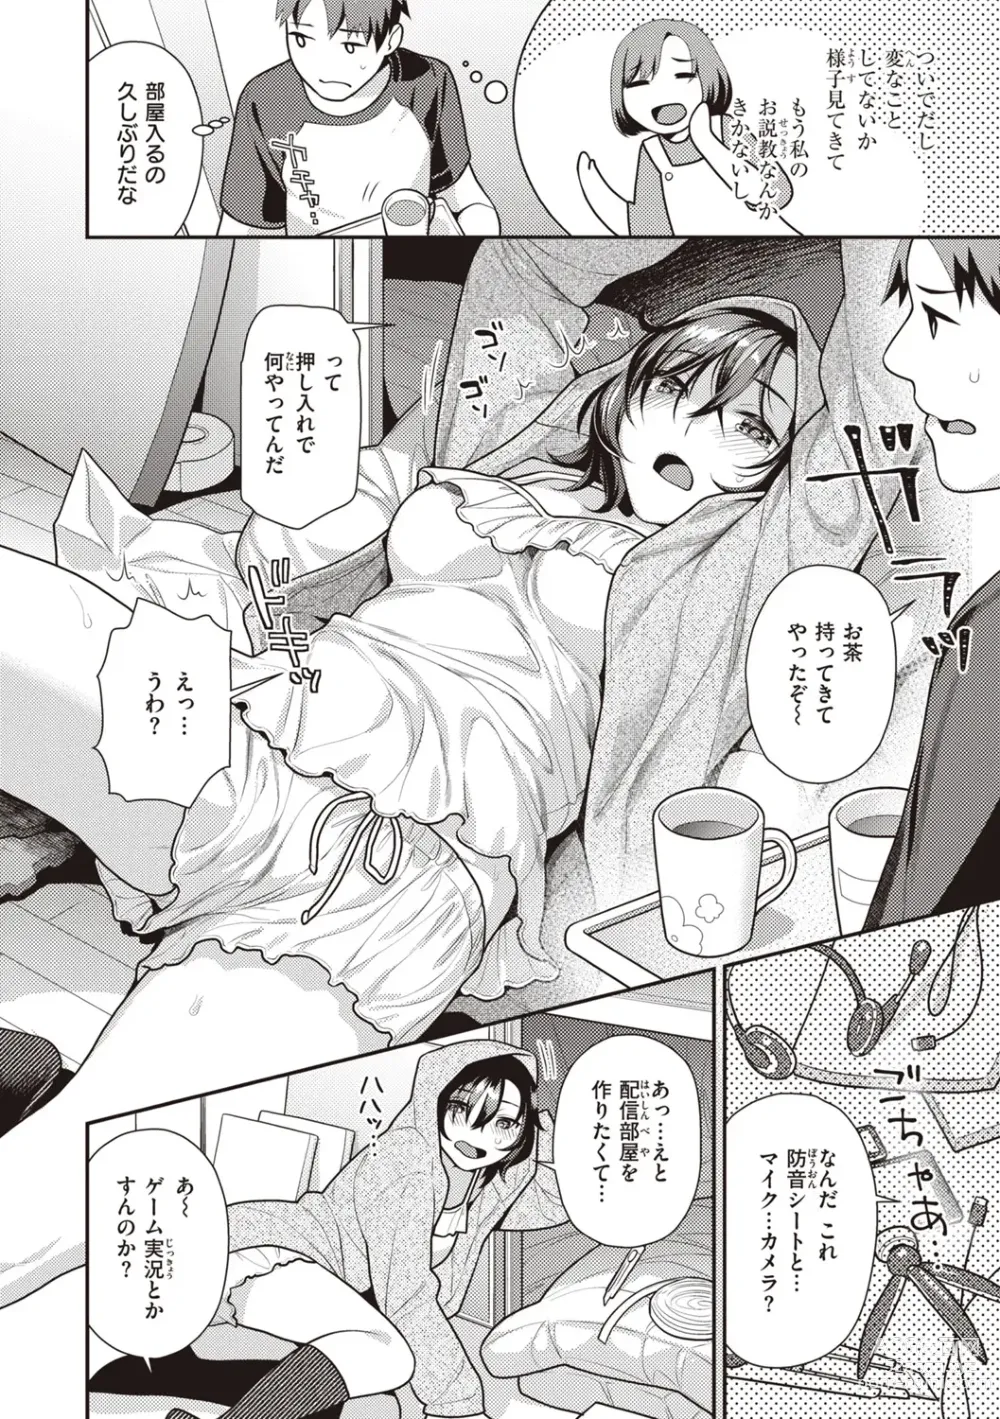 Page 6 of manga Totsumachi Nyanko